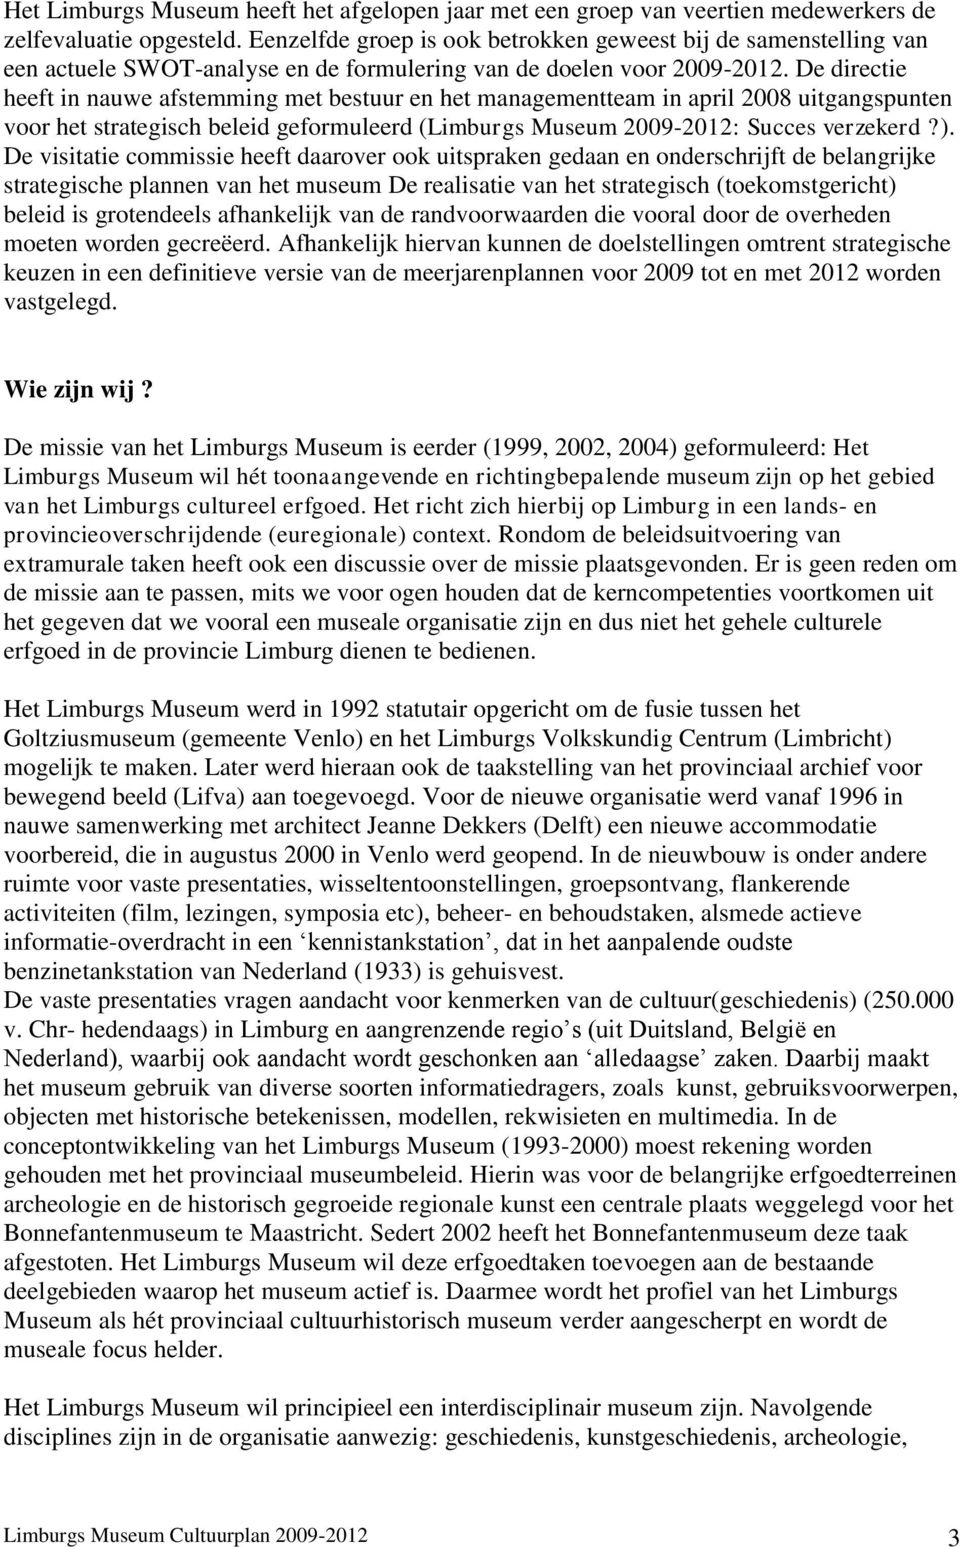 De directie heeft in nauwe afstemming met bestuur en het managementteam in april 2008 uitgangspunten voor het strategisch beleid geformuleerd (Limburgs Museum 2009-2012: Succes verzekerd?).